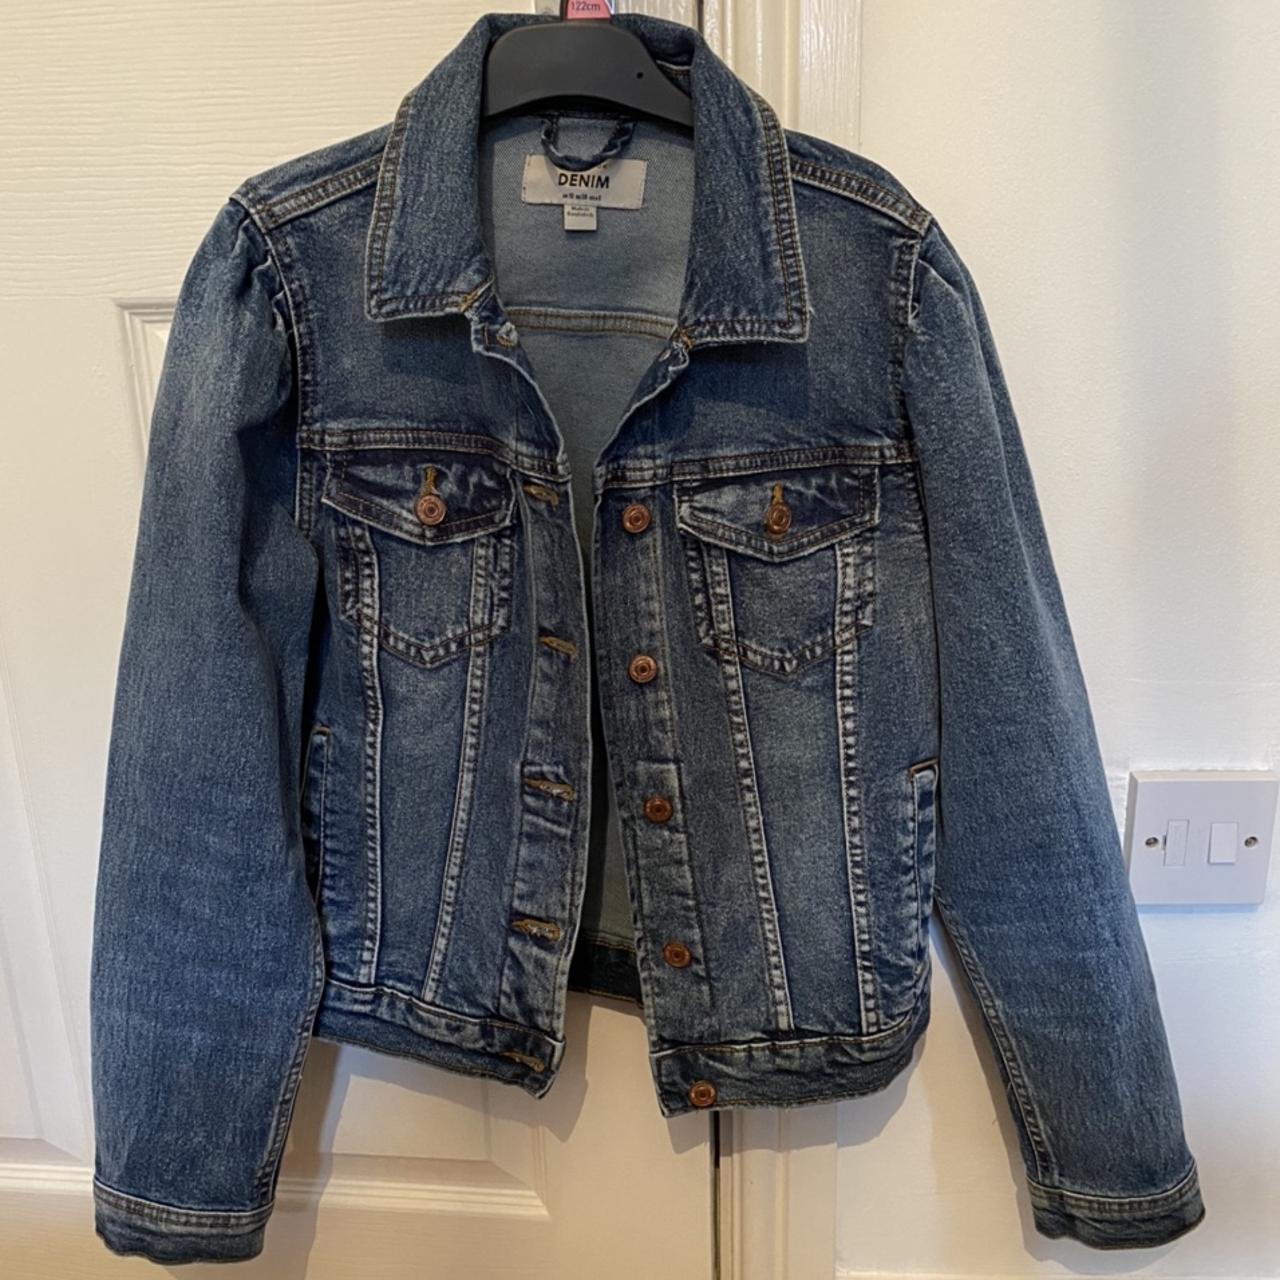 New Look Denim Jacket, size 10. Worn twice, in... - Depop